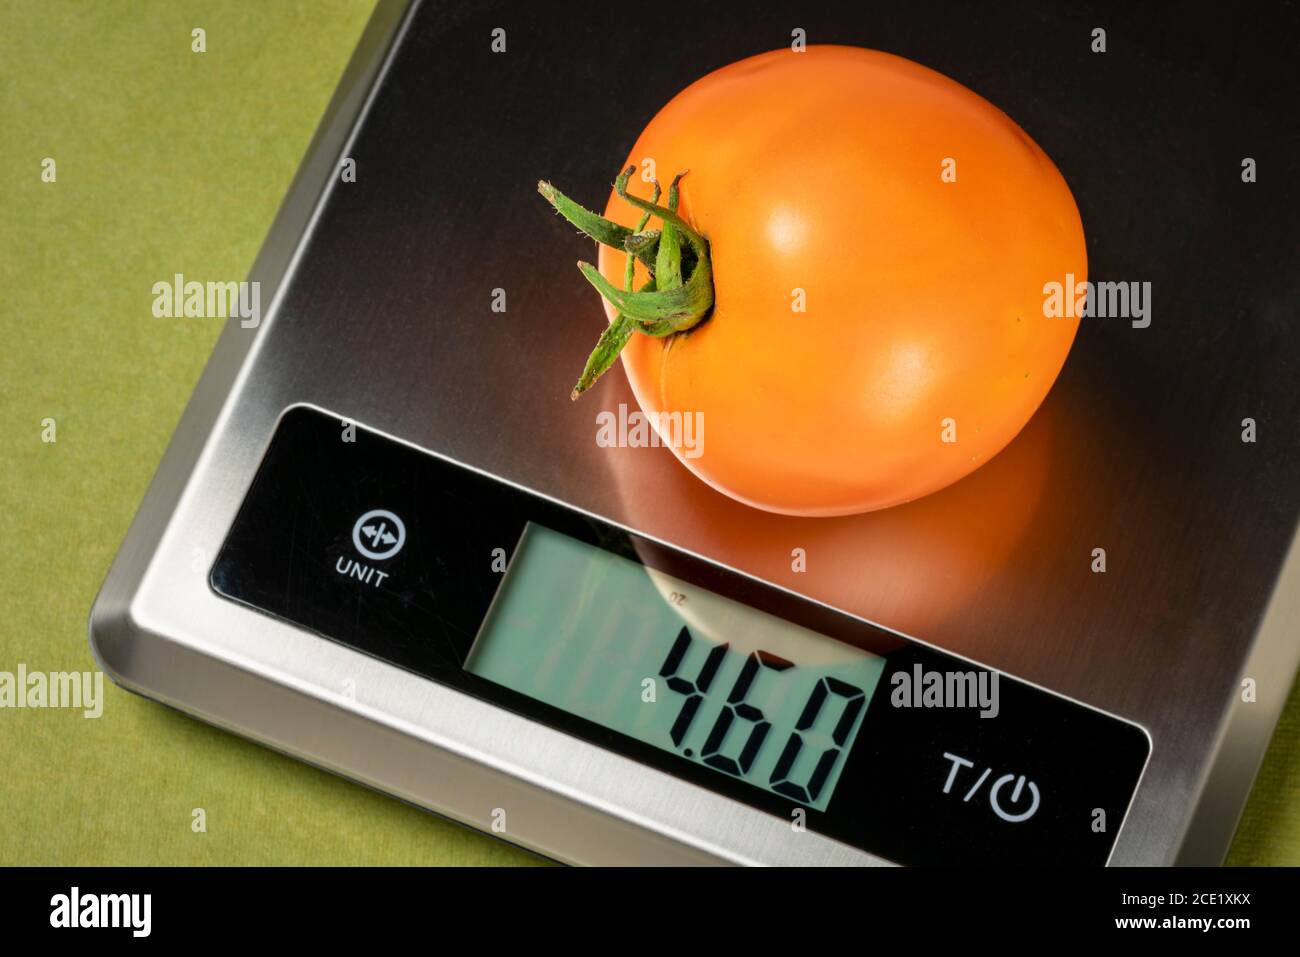 tomate jaune fraîche sur une échelle numérique de régime alimentaire, concept de saine alimentation Banque D'Images